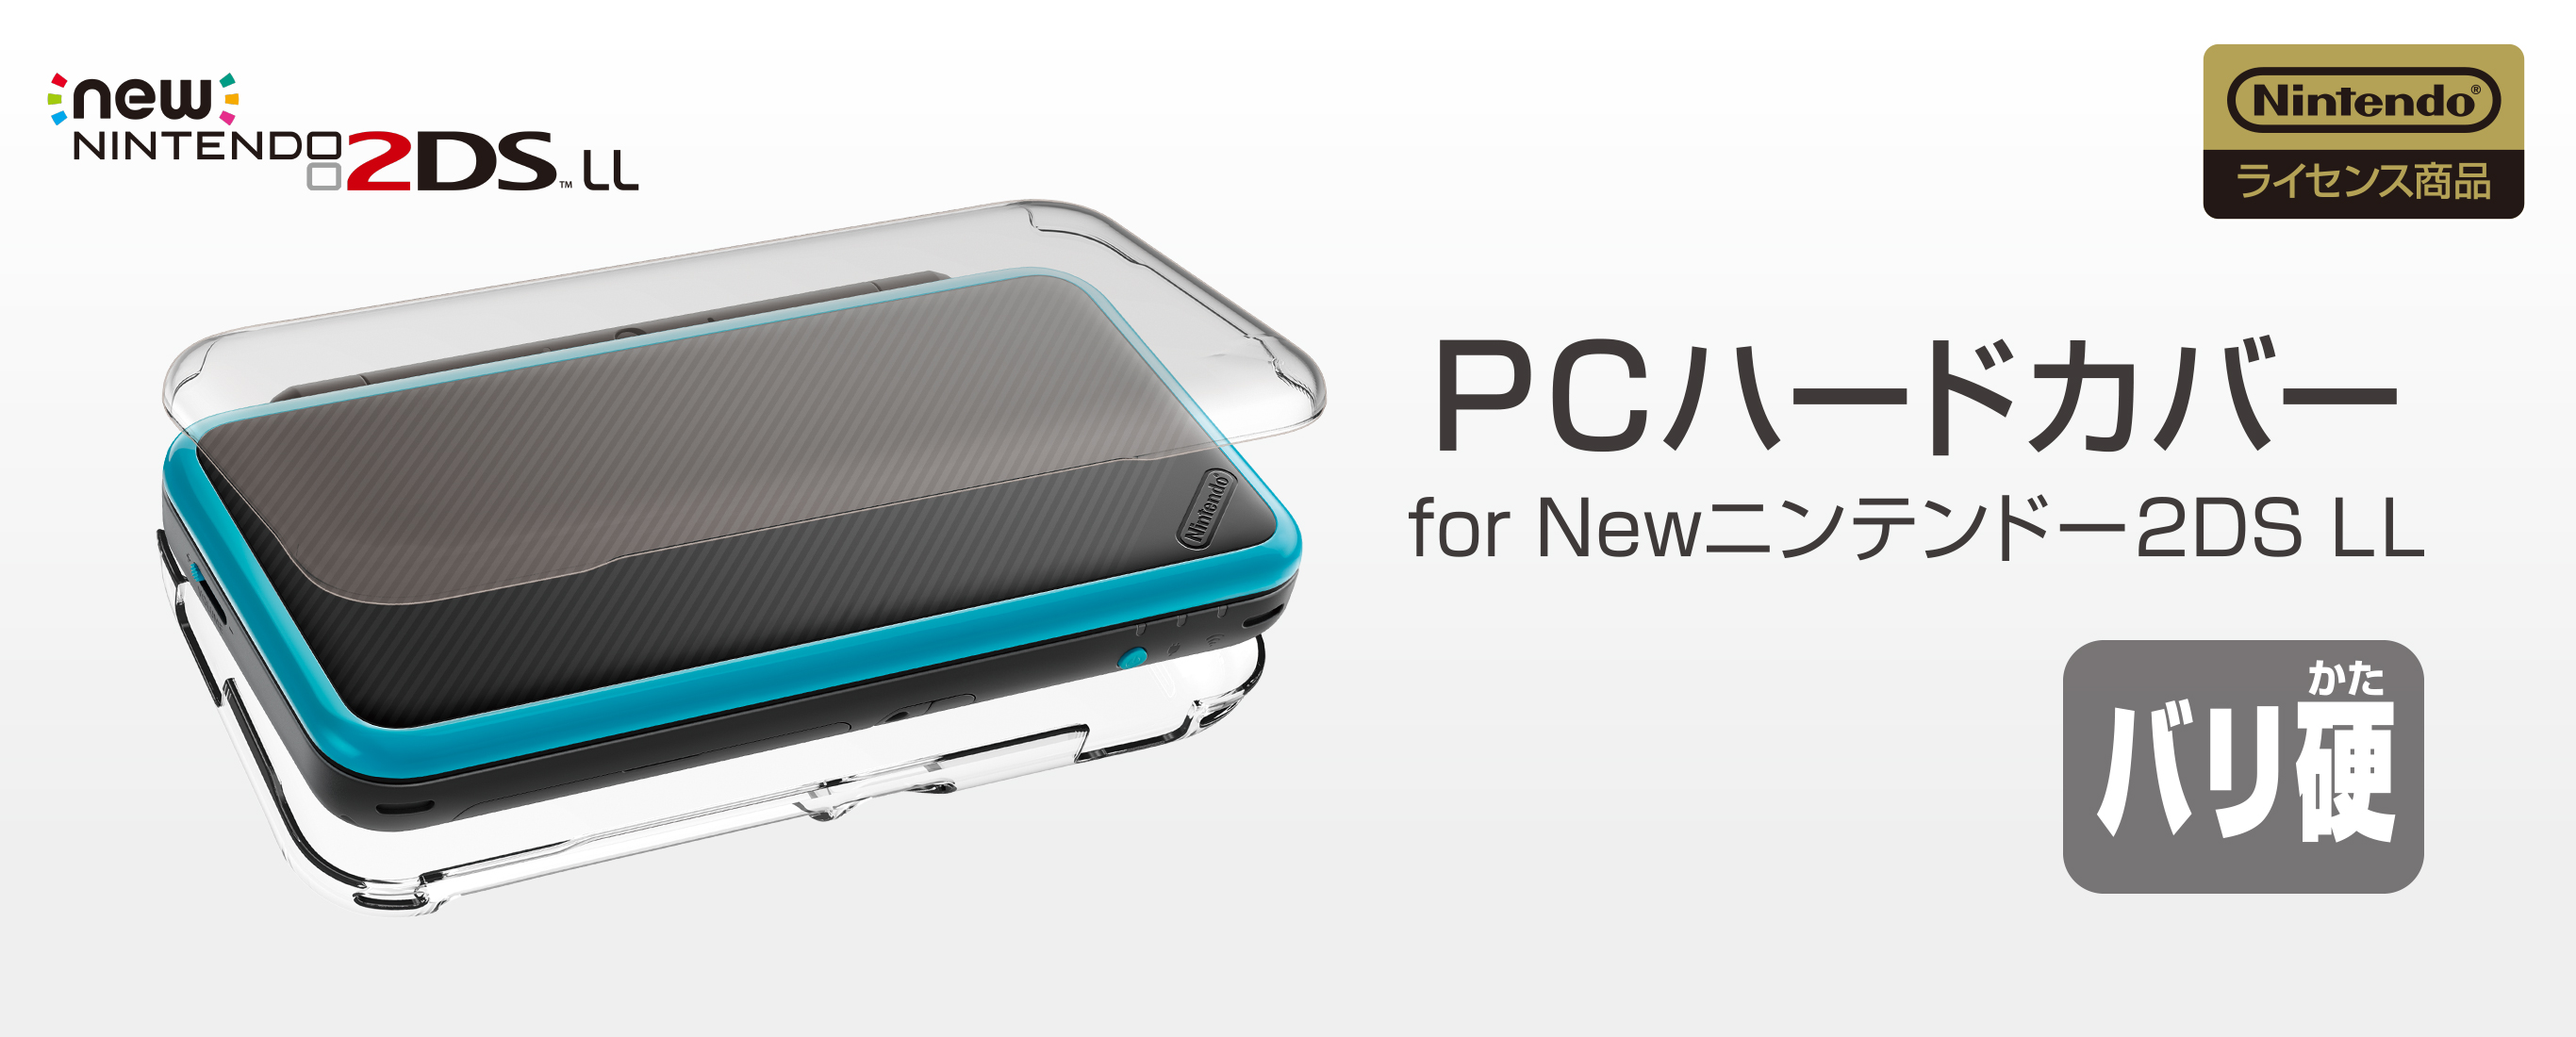 株式会社 HORI | PCハードカバー for Newニンテンドー2DS LL